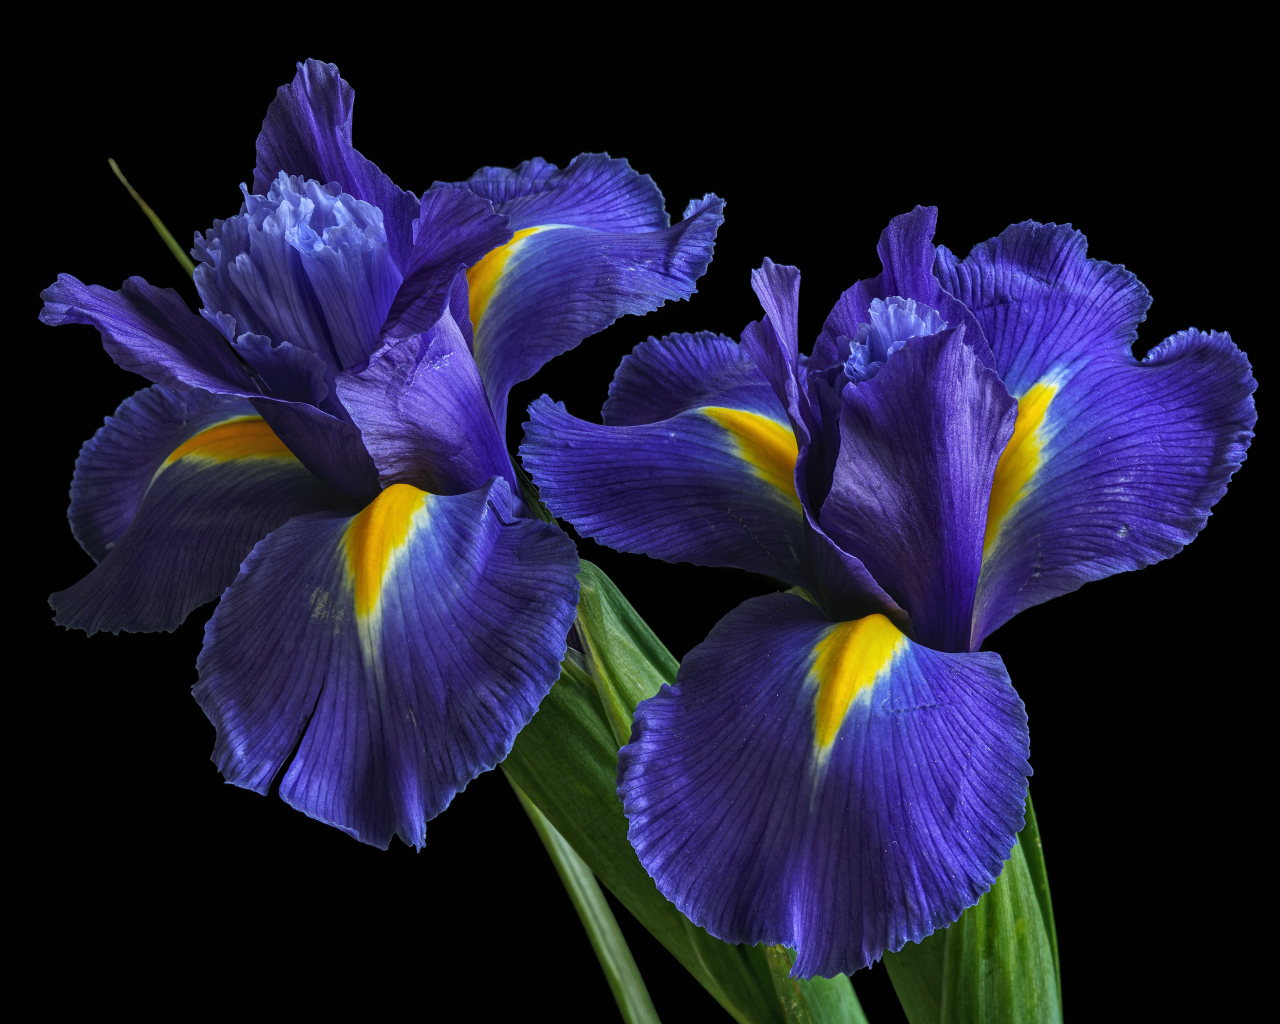 Синие цветы ириса на черном фоне